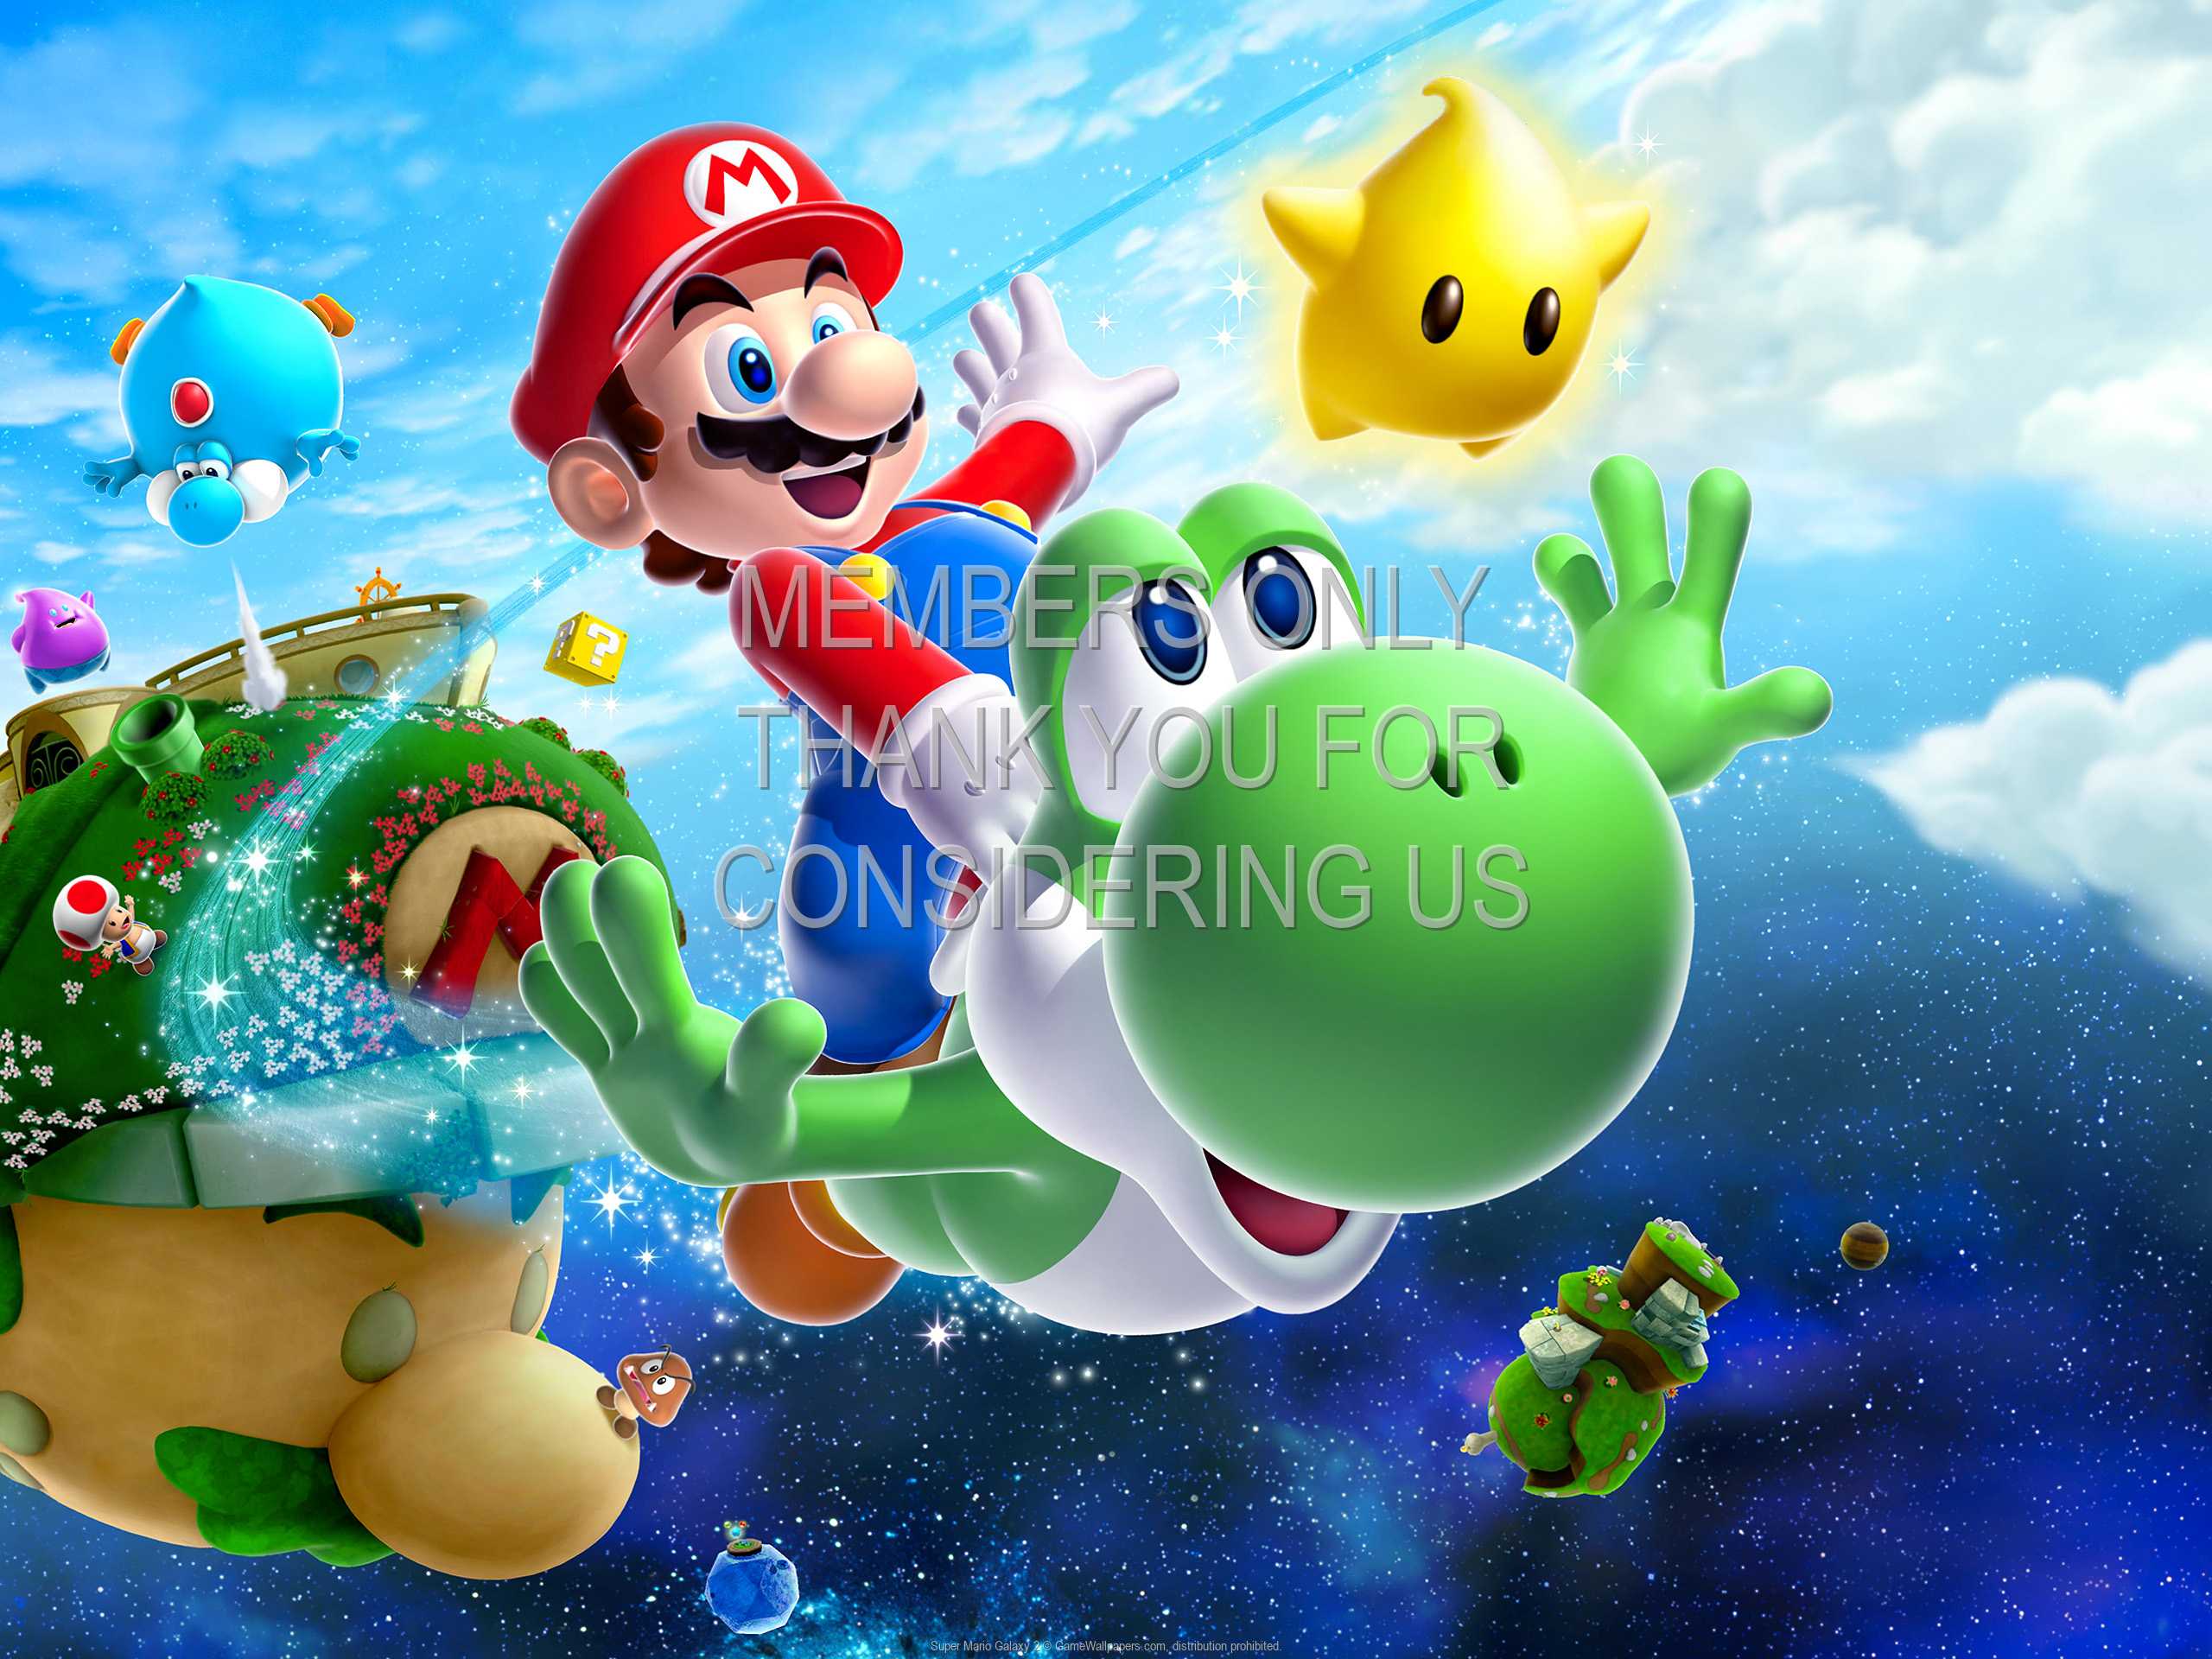 Super Mario Galaxy 2 1080p Horizontal Mobile fond d'cran 01